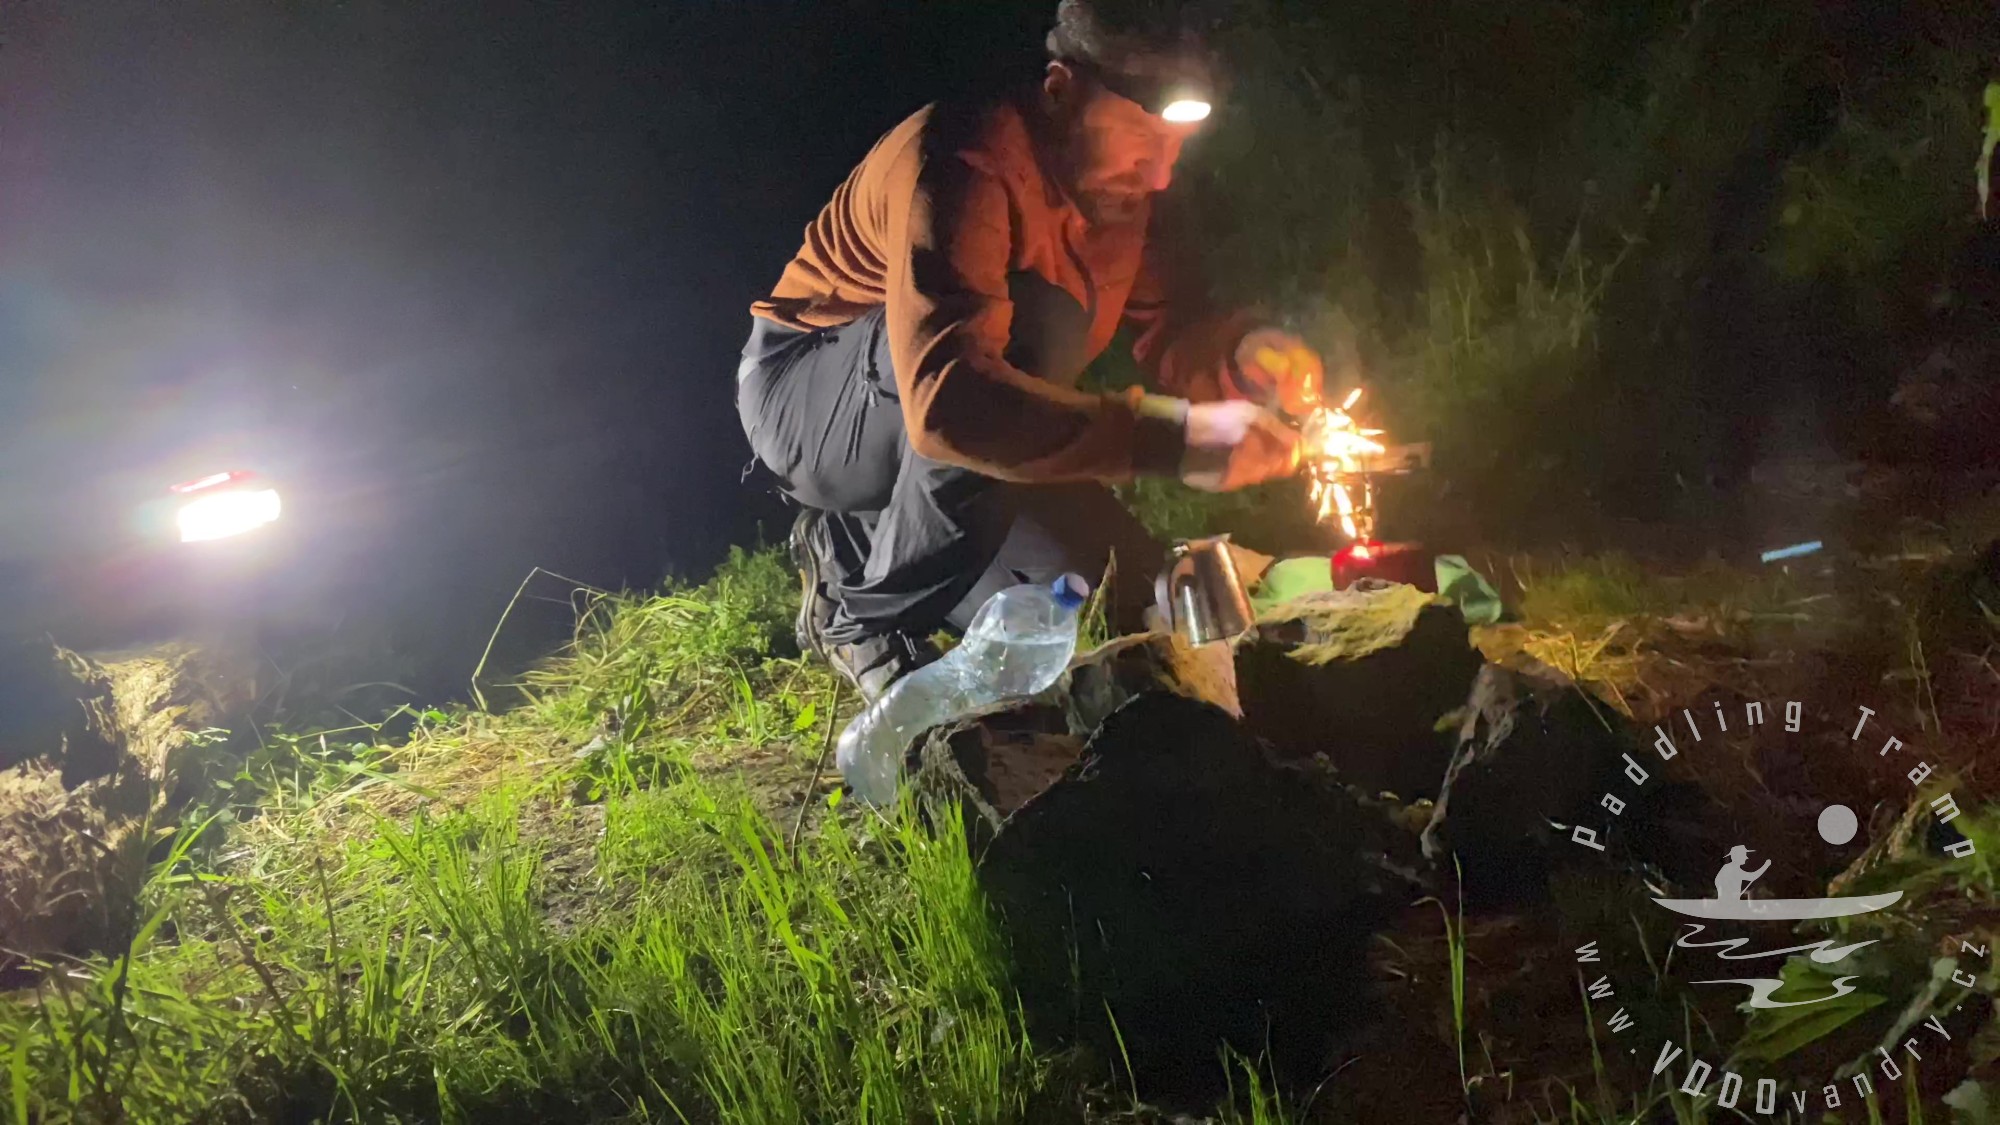 Jak jsem se cvakl na nočním sjezdu řeky Opavy | Noční pádlování | Kánoe Gumotex Pálava | Bushcraft